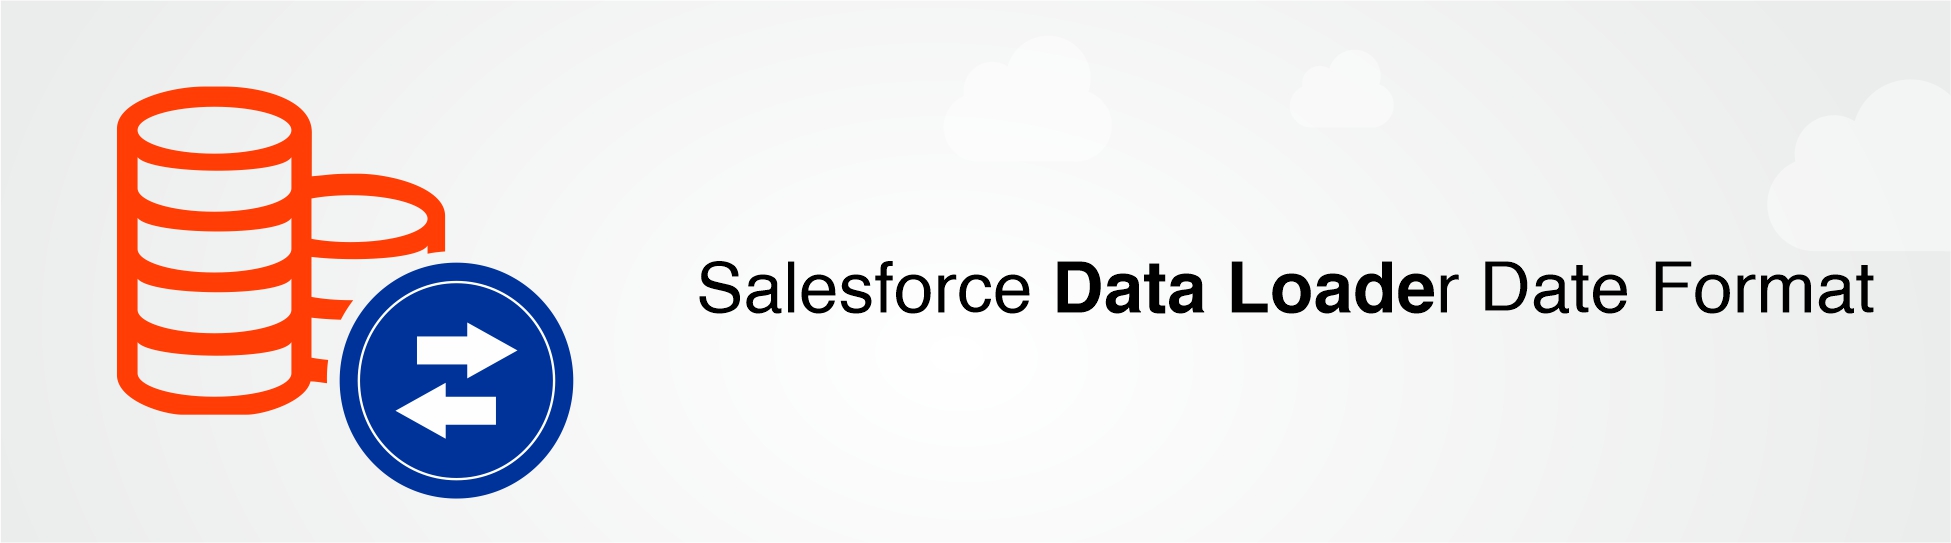 Salesforce-Data-Loader-Date-Format